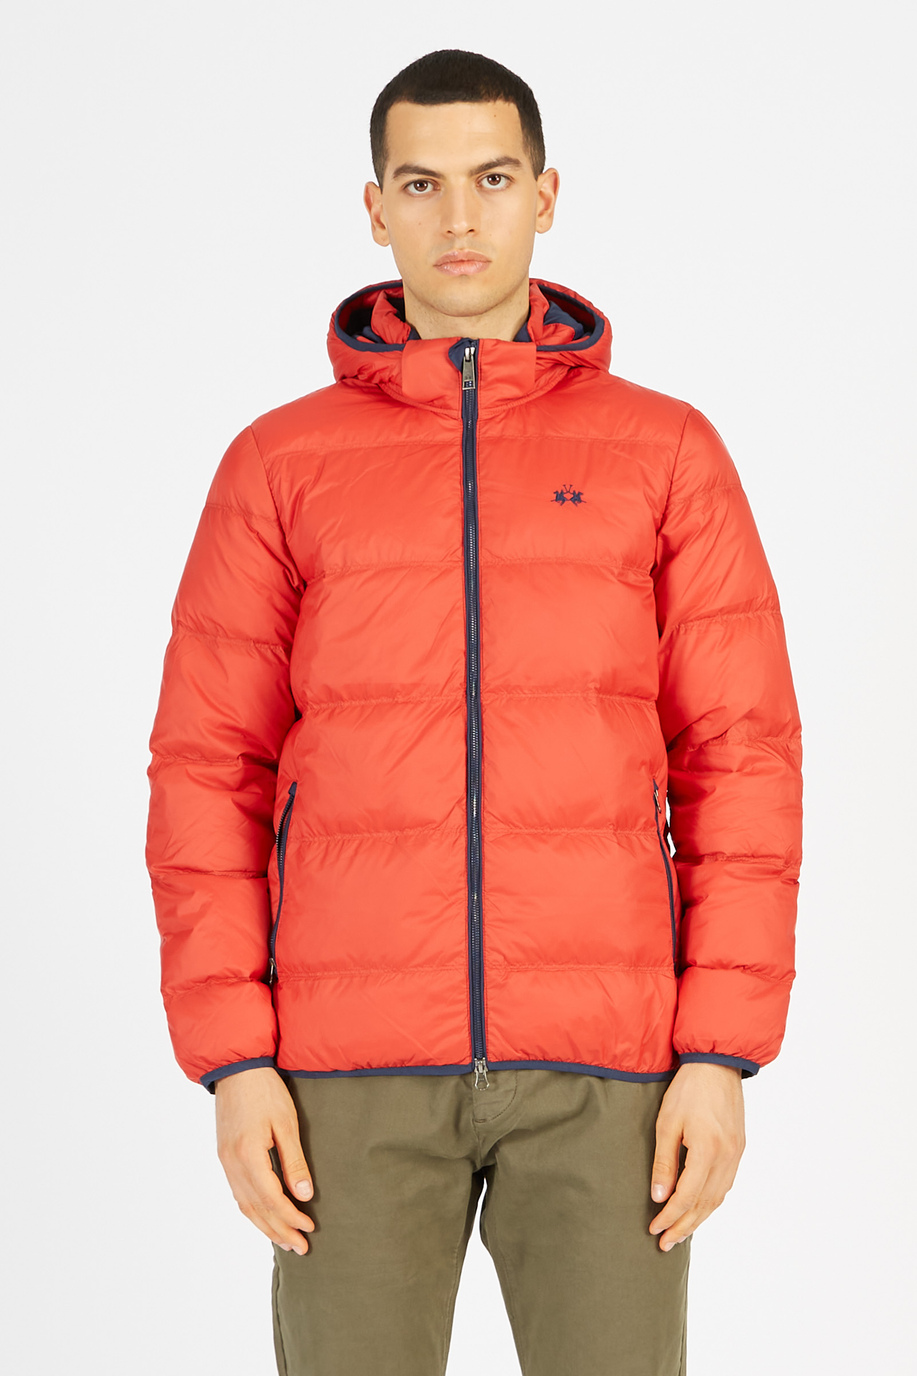 Men’s goose down jacket with regular fit zip closure - Rainproof & Windproof | La Martina - Official Online Shop